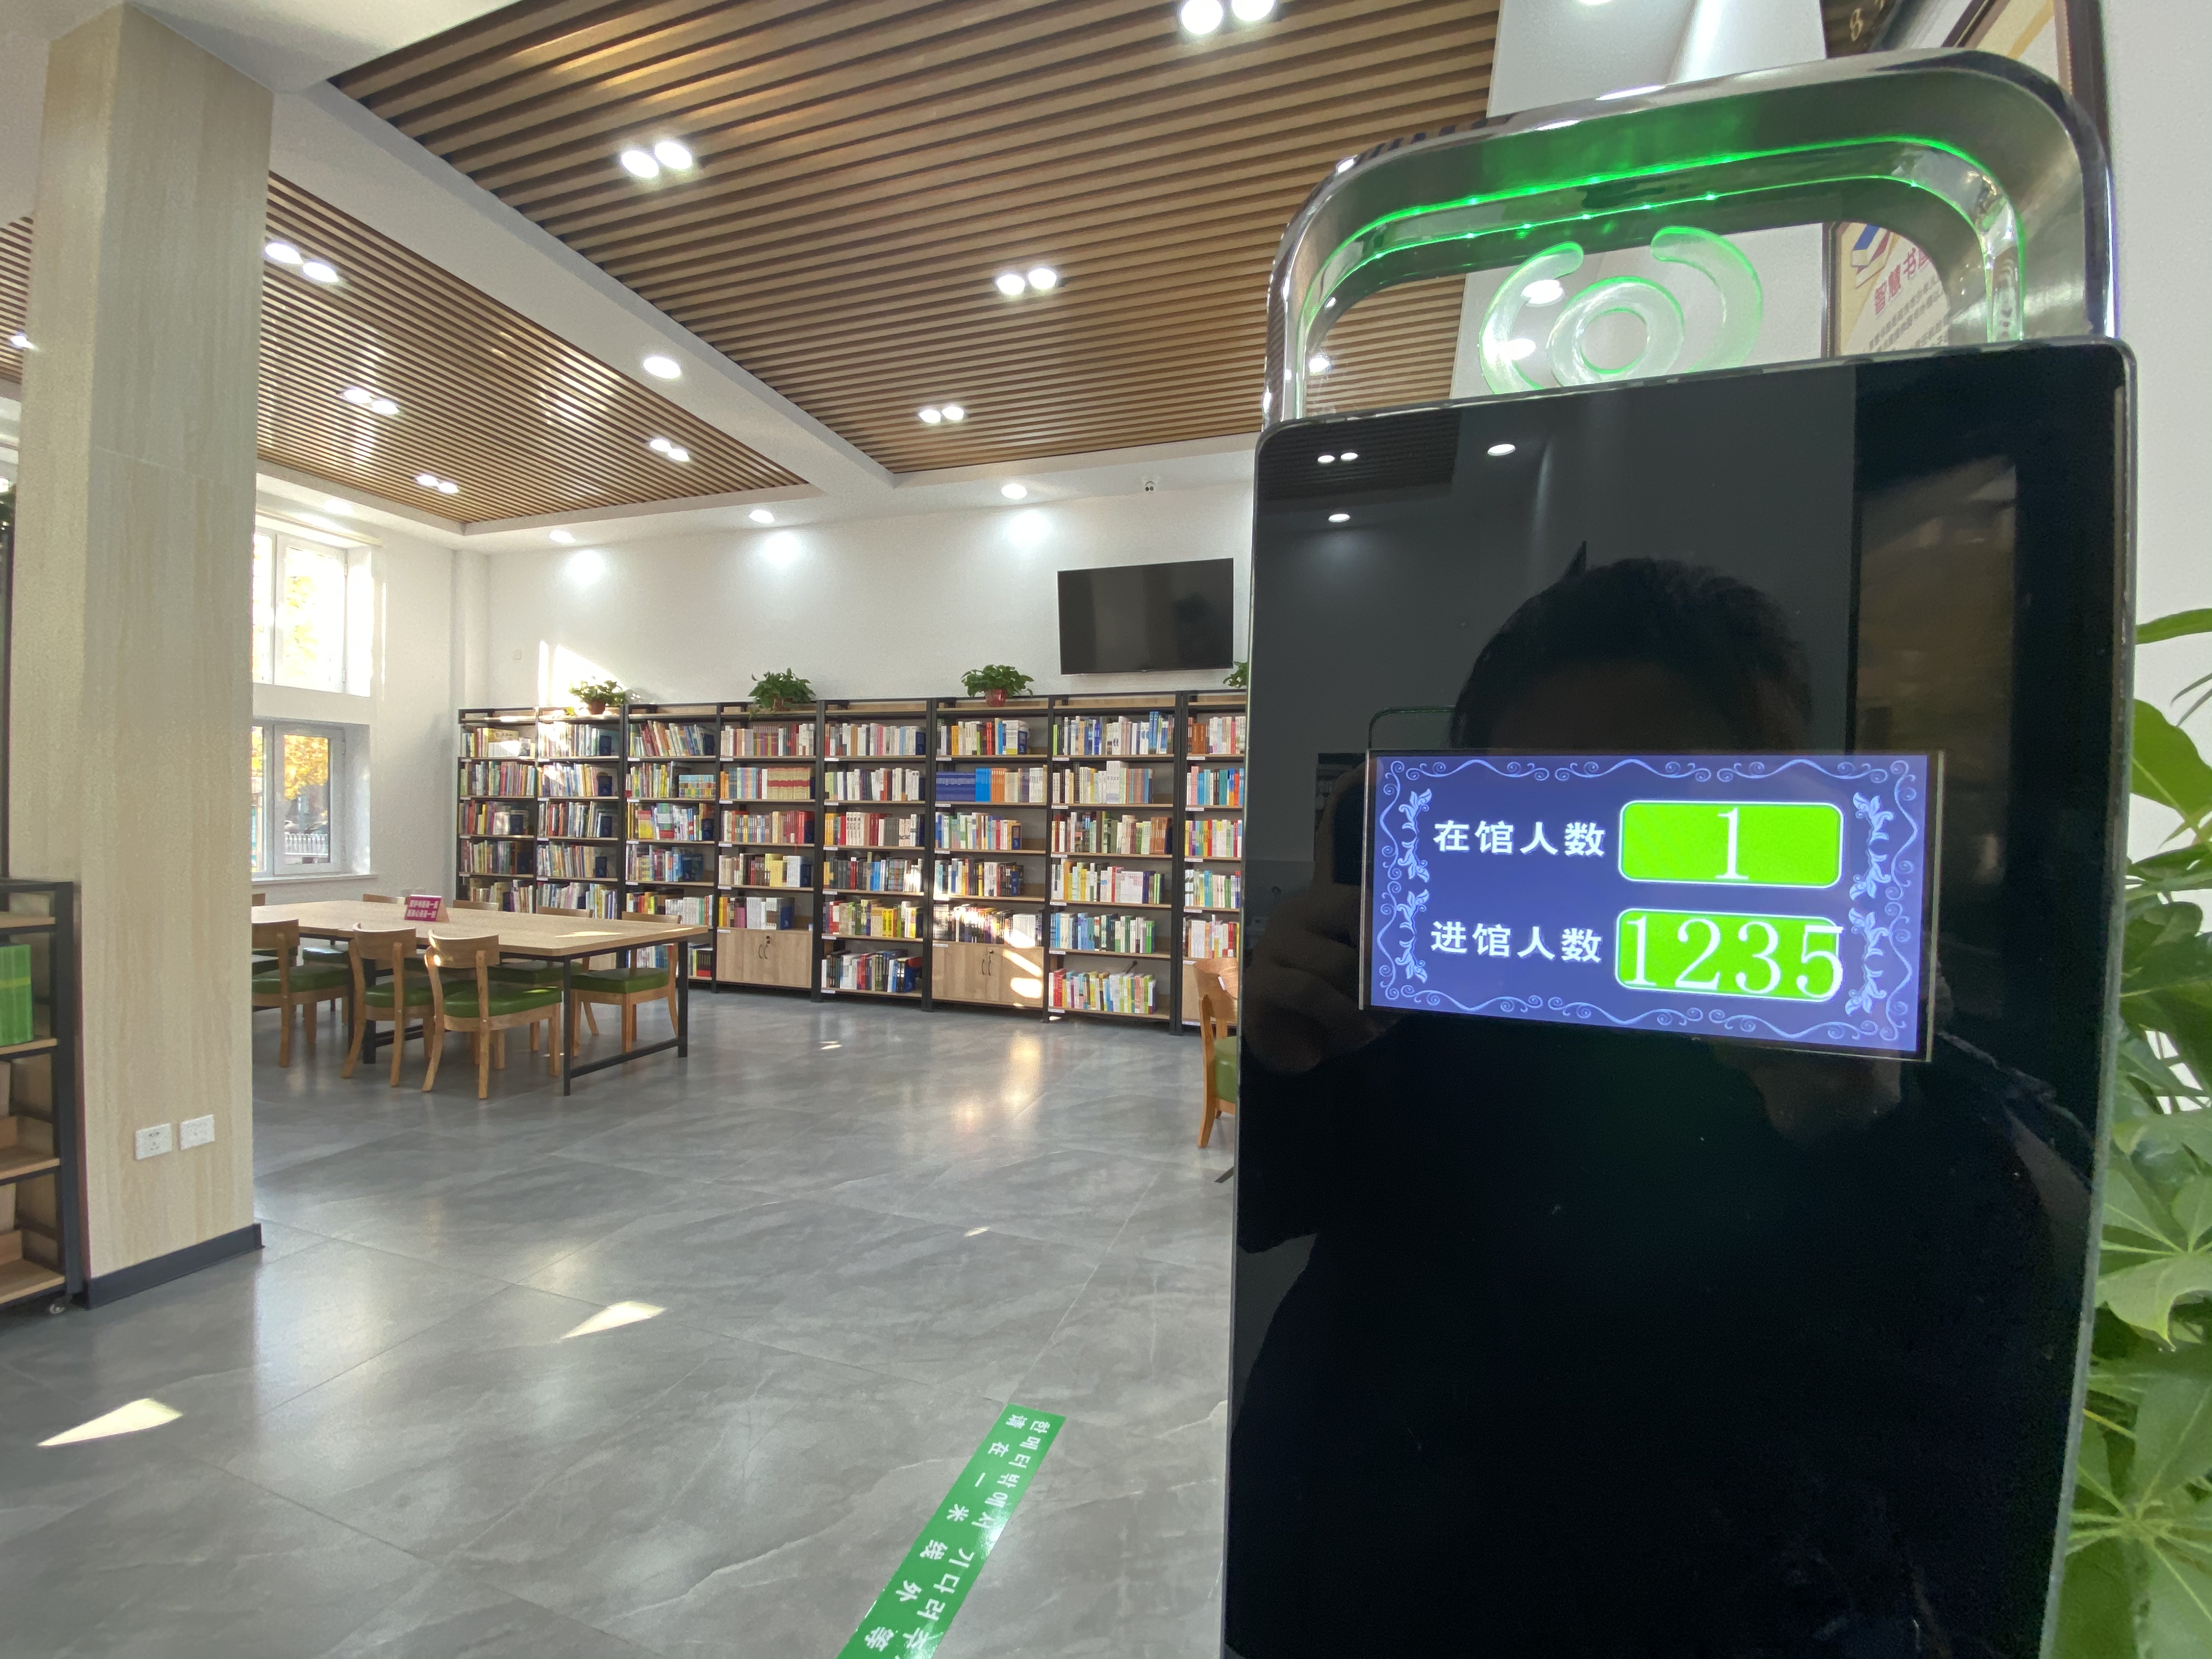 延吉首家自助公共图书馆"智慧书屋"正式开放